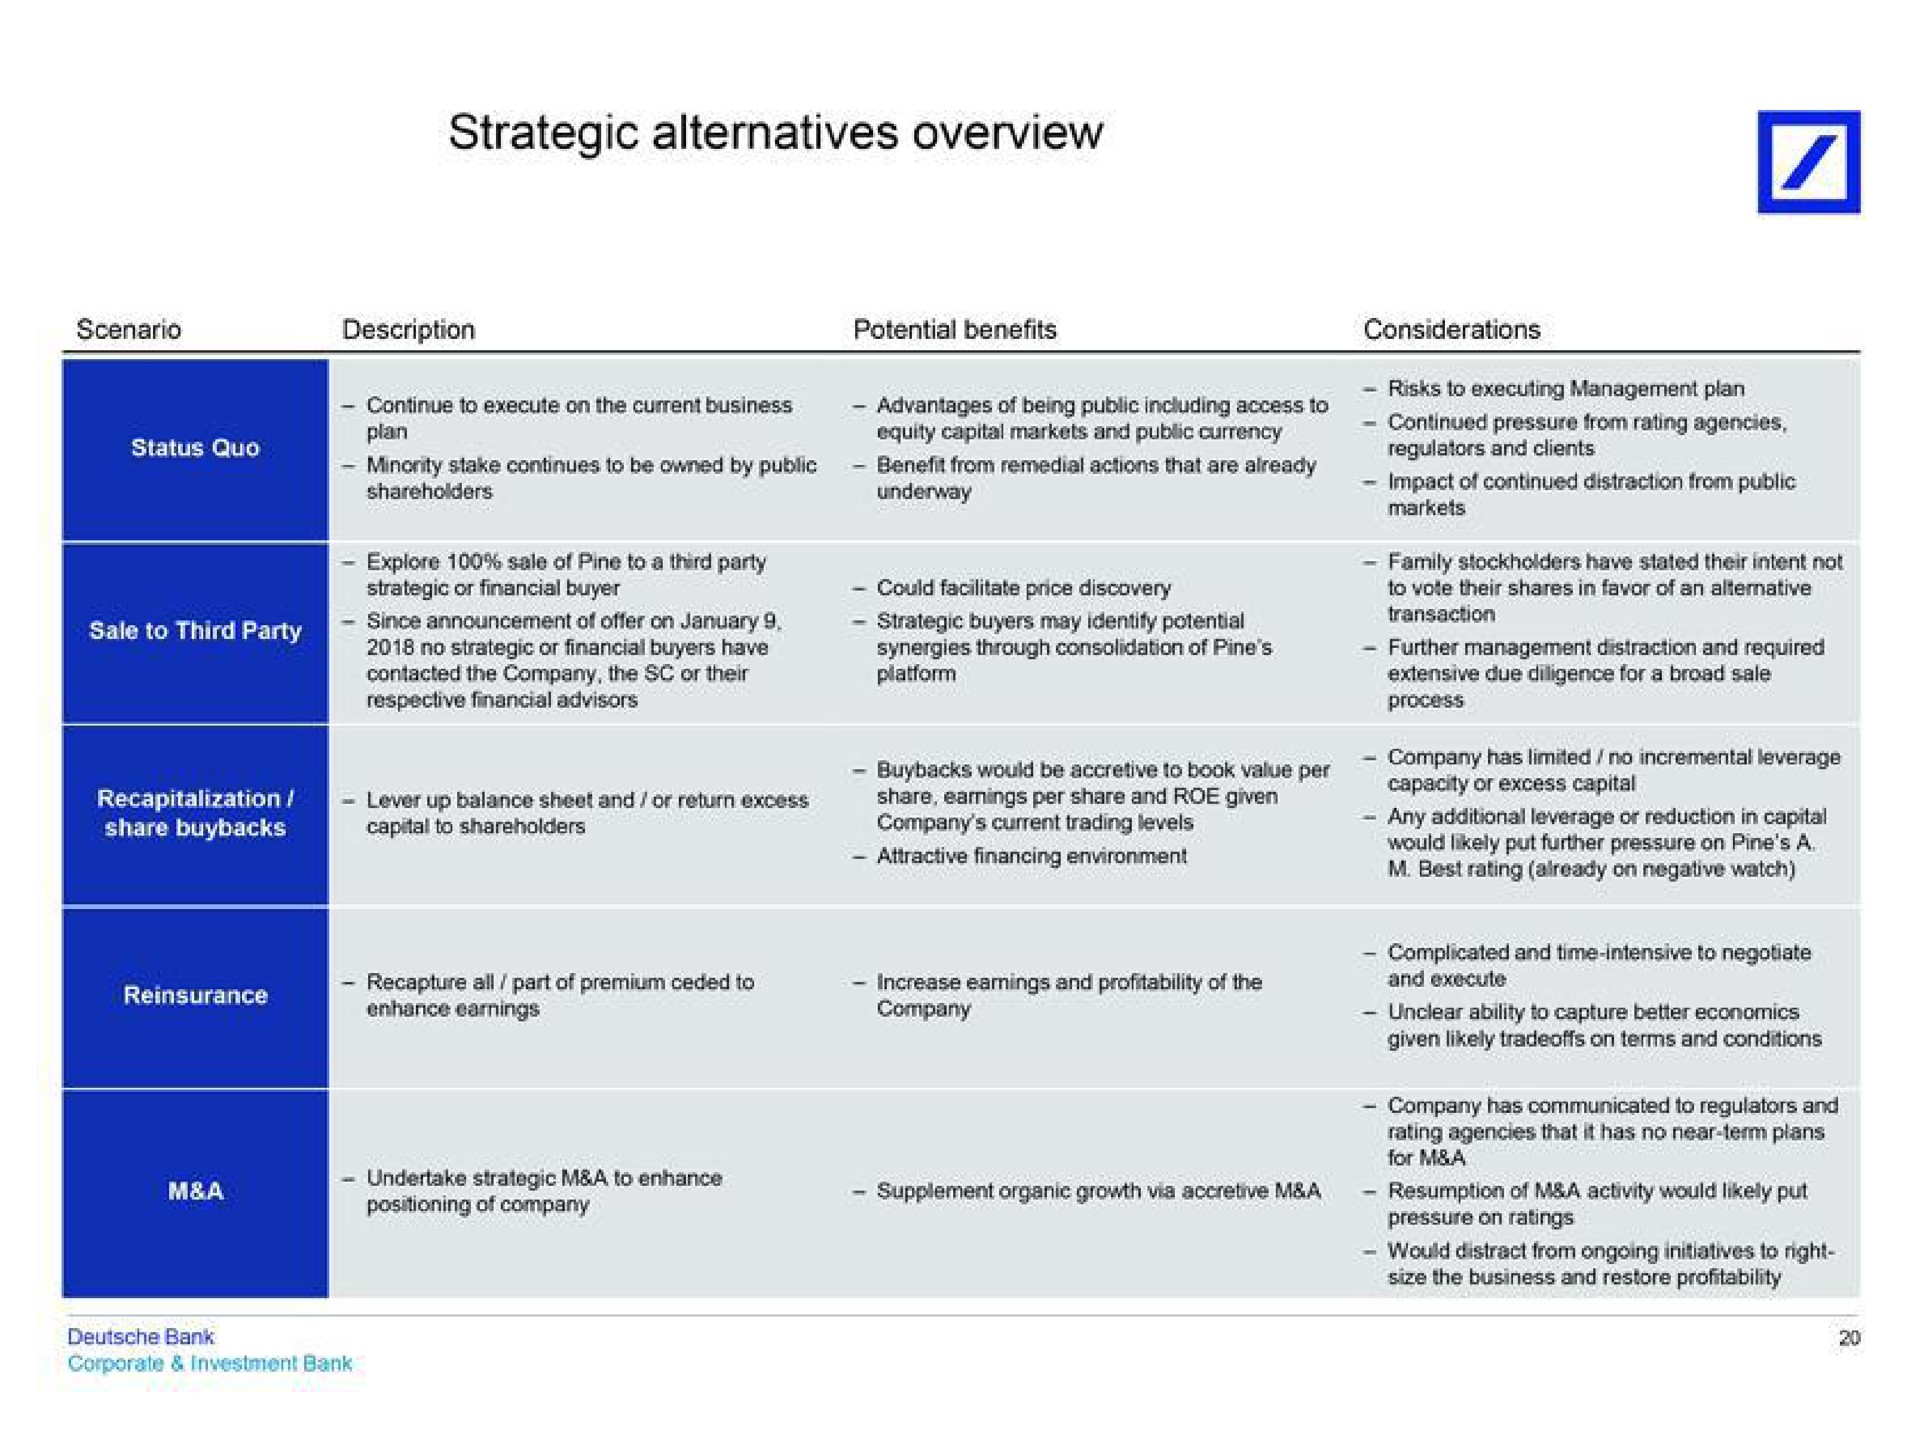 strategic alternatives overview | Deutsche Bank